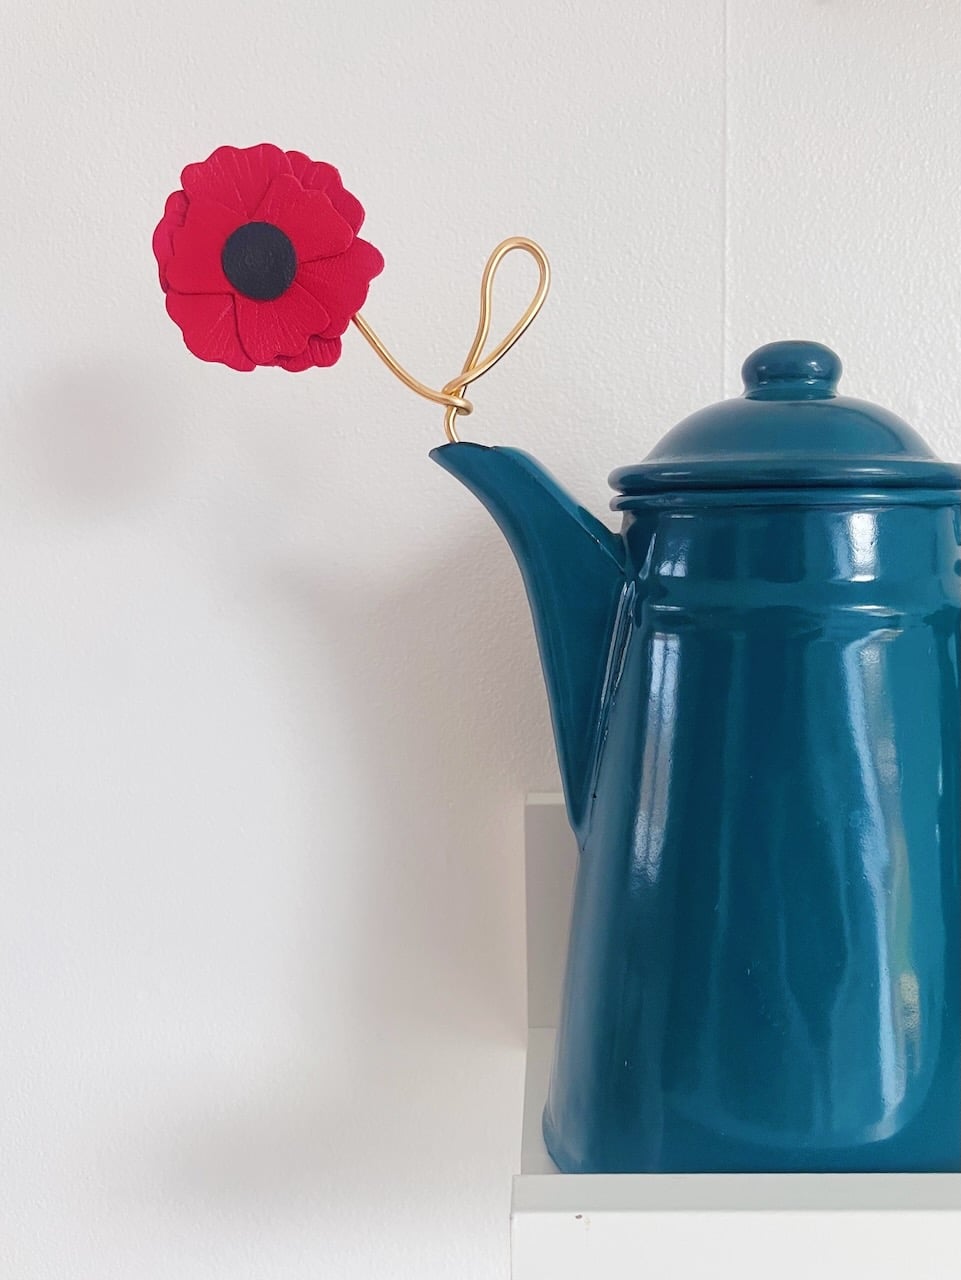 fleur française durable à la tige - coquelicot en cuir surcyclé rouge et noir © du vent dans mes valises artisanat d'art sur la Côte d'Opale, Wissant